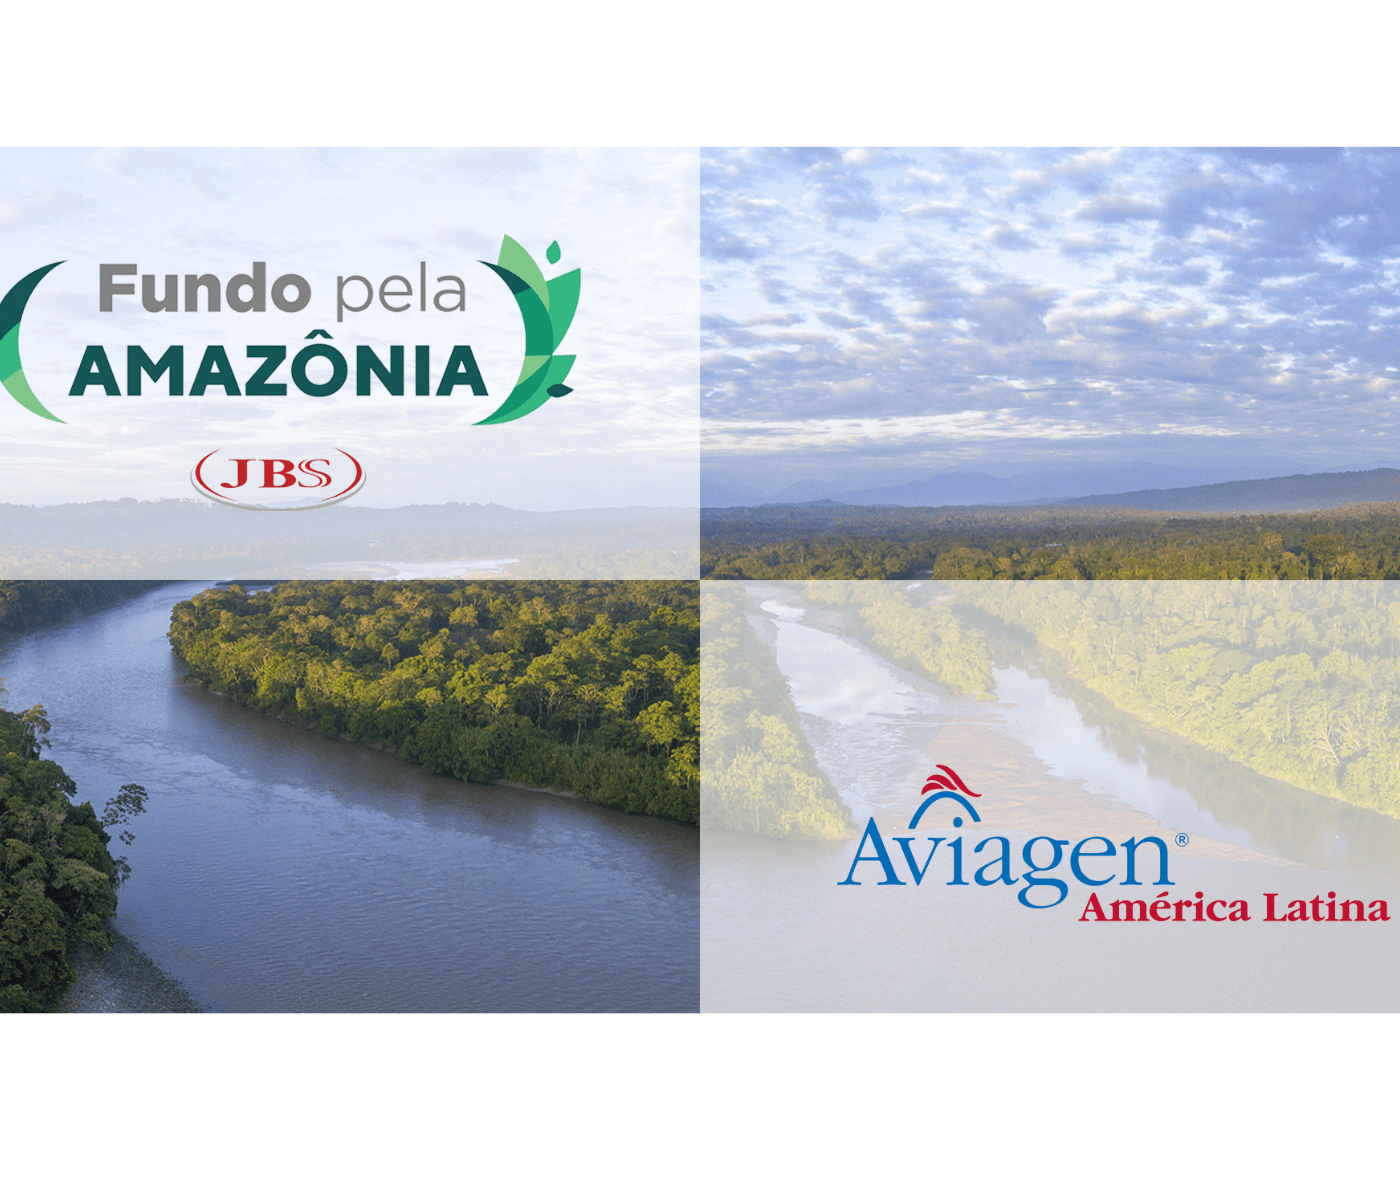 Suporte da Aviagen América Latina ao “Fundo JBS pela Amazônia”...